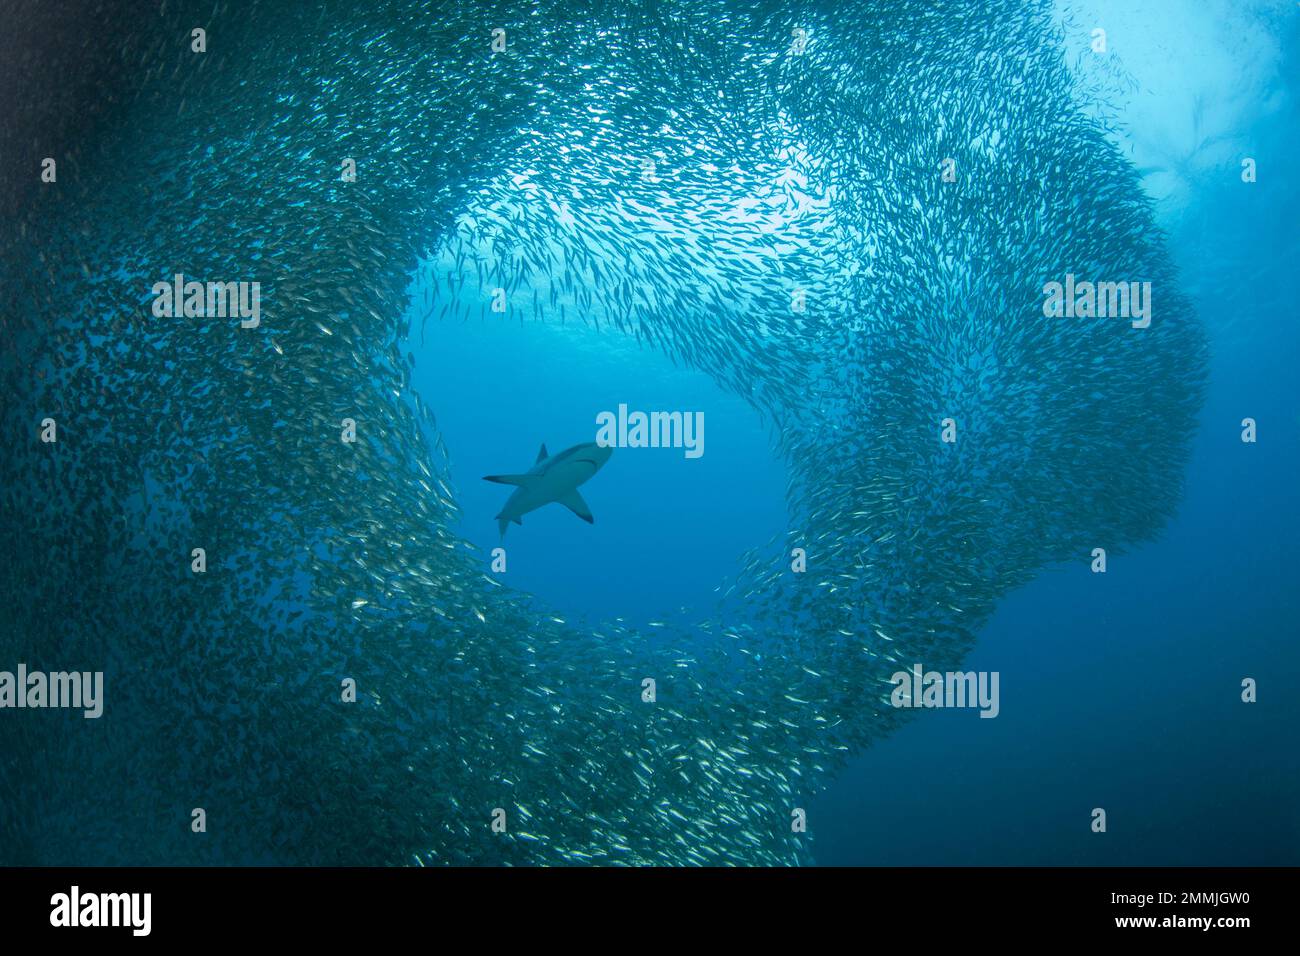 Eine riesige Sardinenschule für einen Schwarzspitzen-Riffhai, Carcharhinus melanopterus, Moalboal, Cebu, Central Visayas, Philippinen. Stockfoto